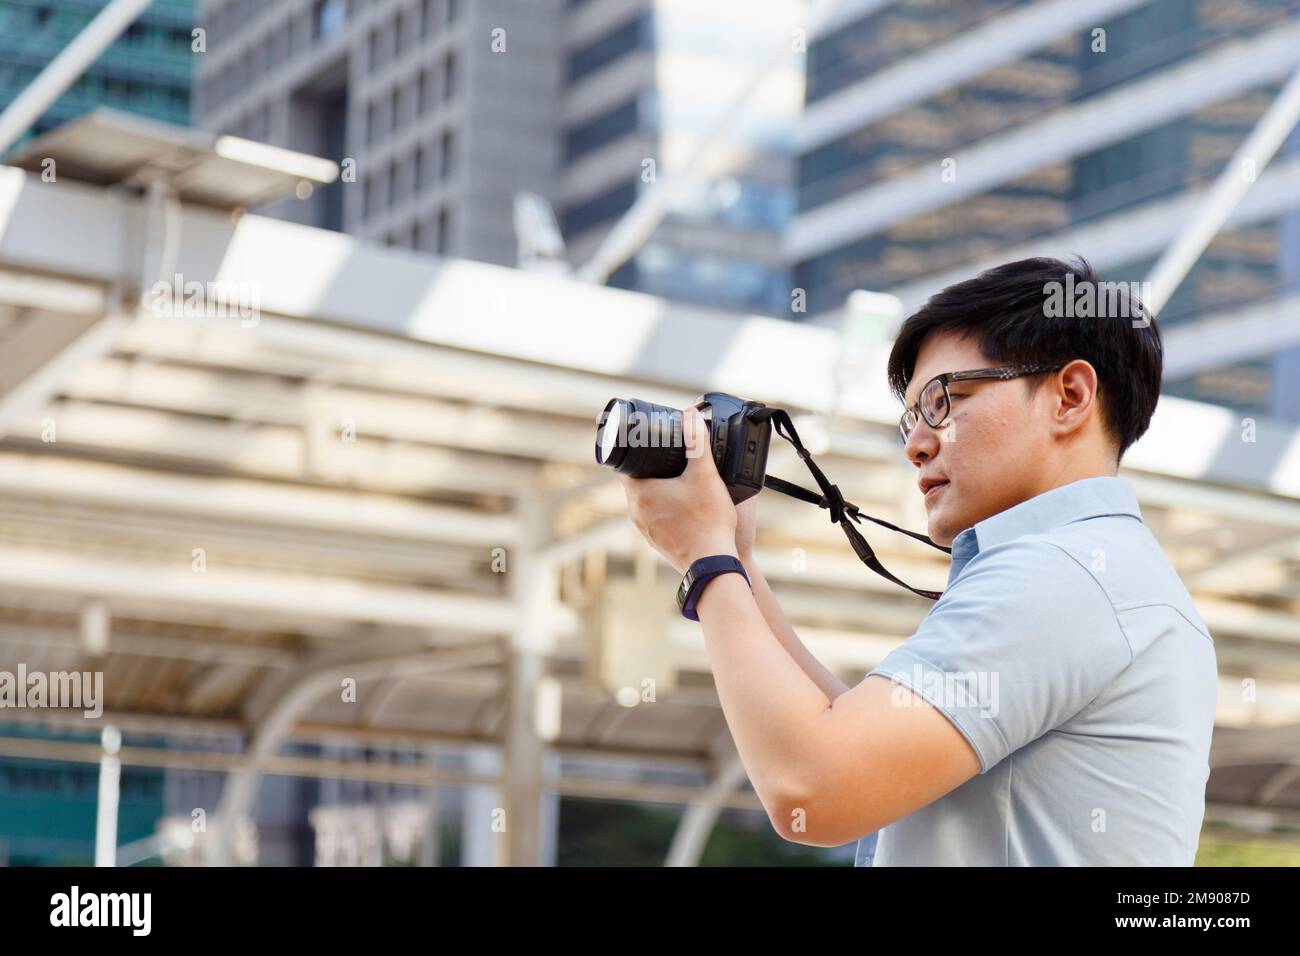 Jeune photographe asiatique tenant l'appareil photo pour prendre des photos de la ville. Plein air été style de vie portrait voyageur s'amusant avec la rue de tournage Banque D'Images